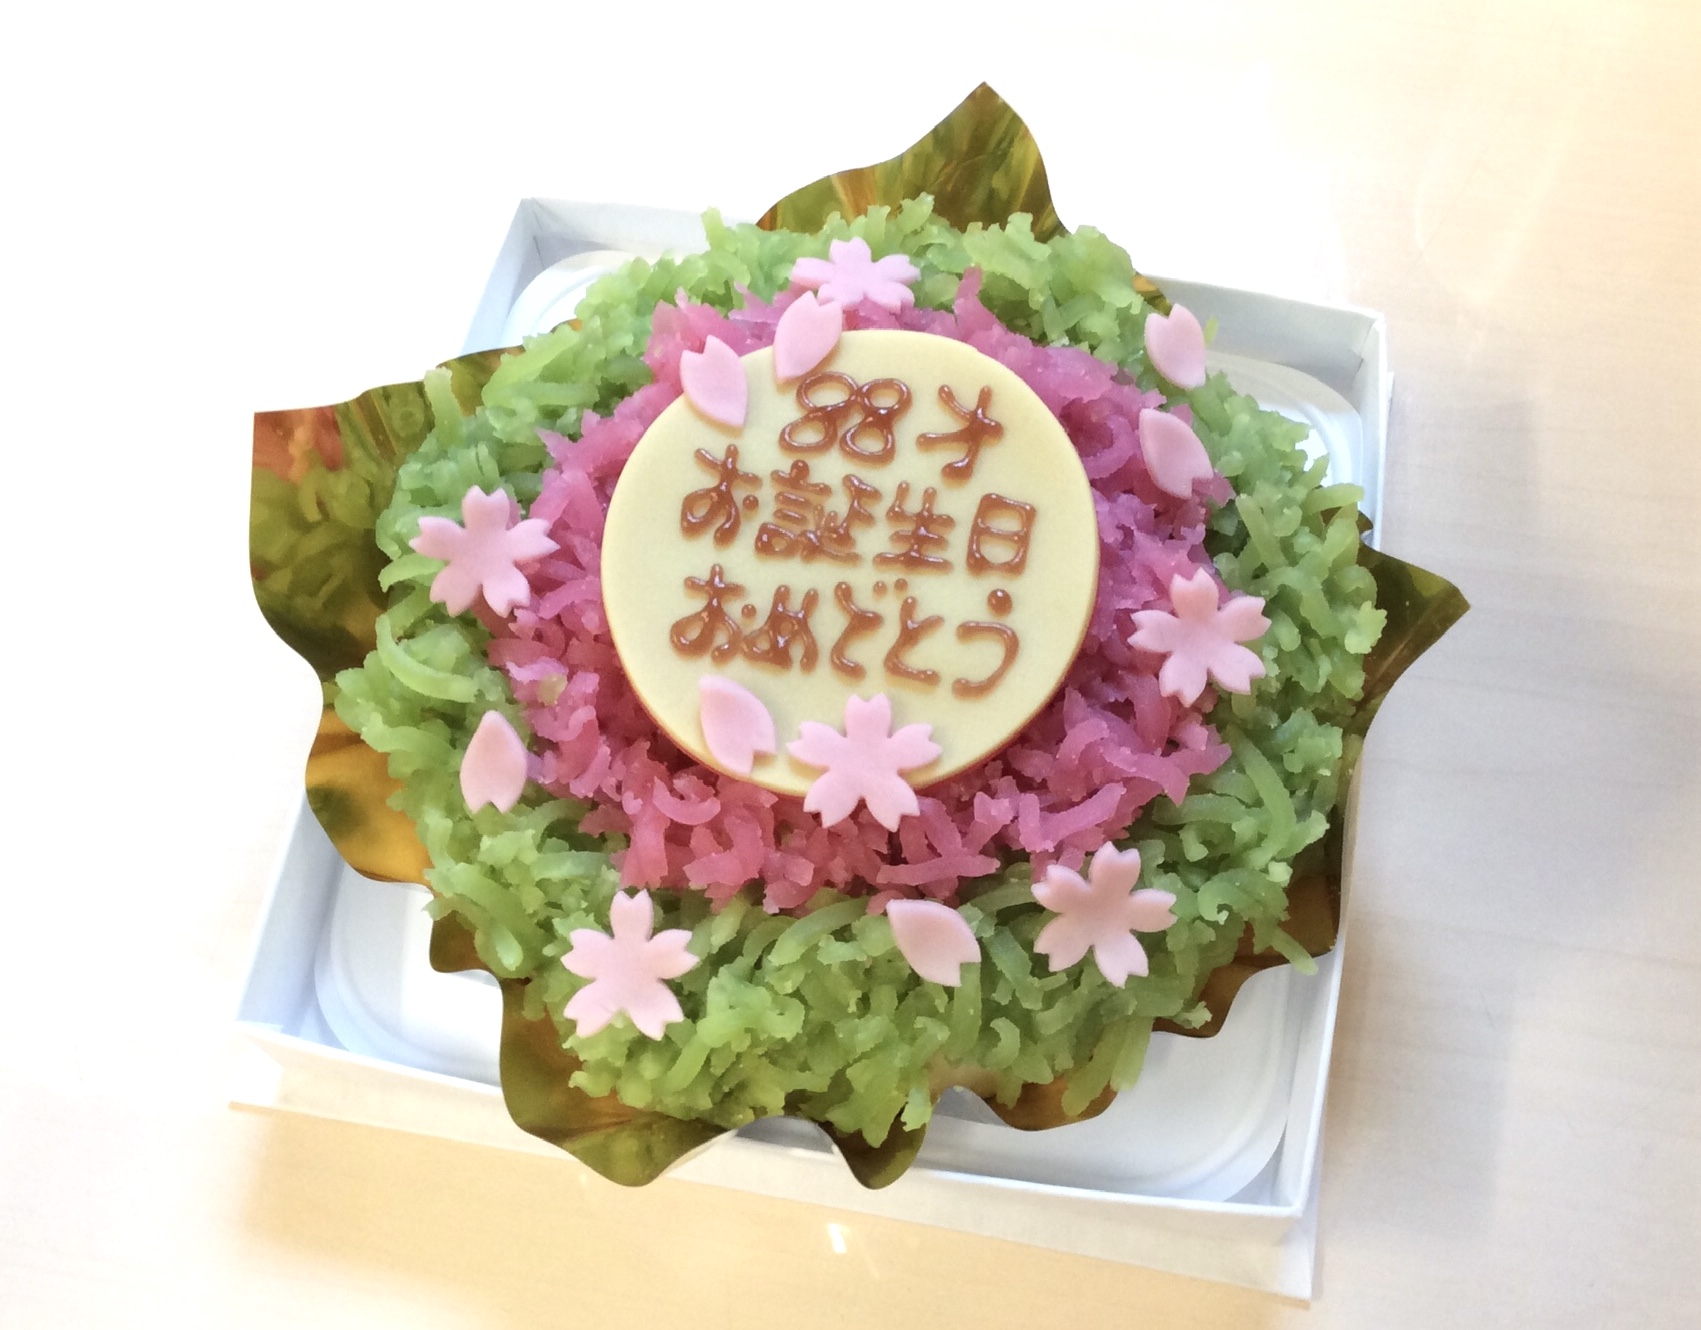 菓子処 喜久春 歳のお誕生日に和菓子ケーキをご注文いただきました